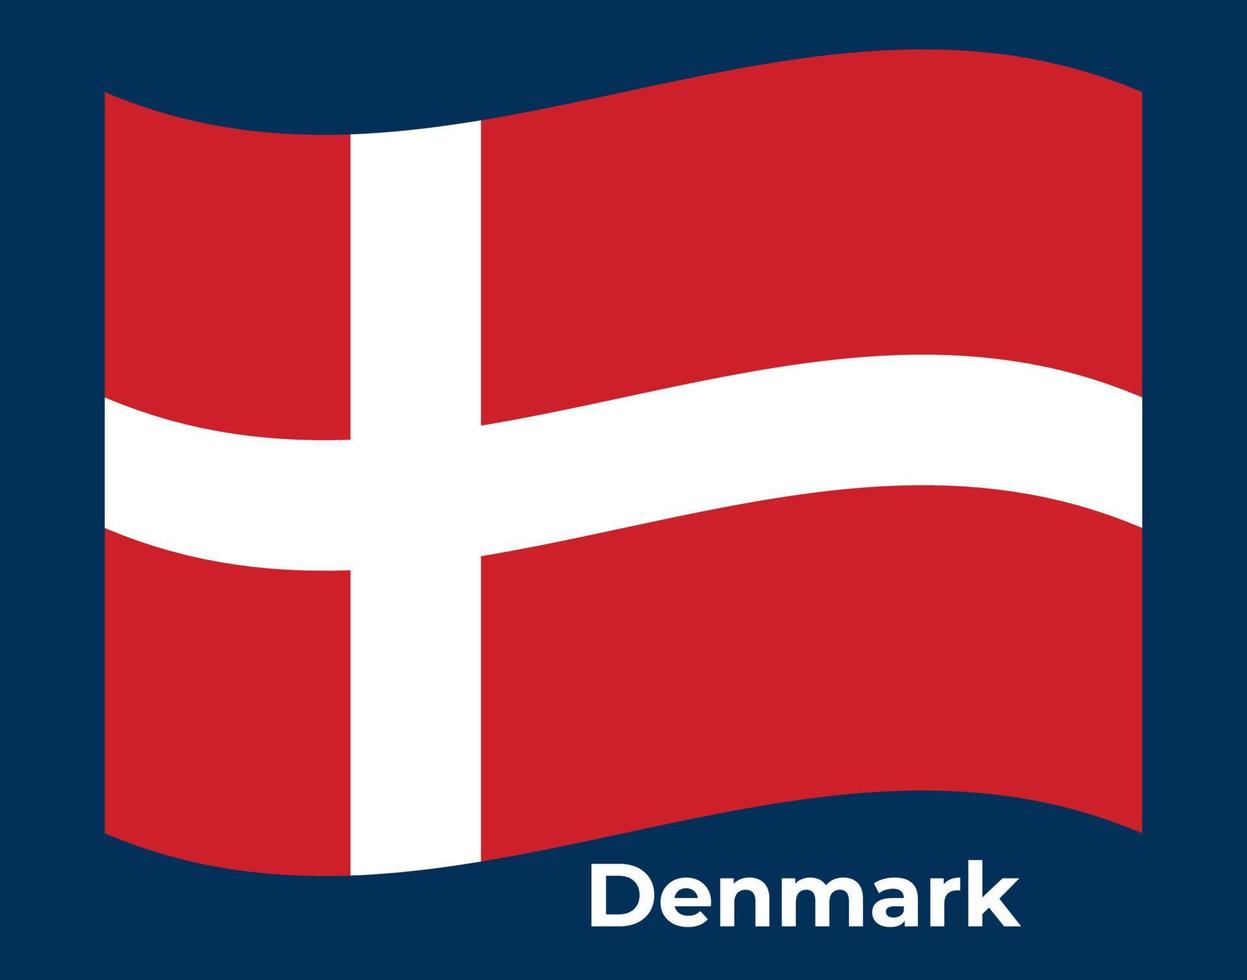 Denmark flag Vector illustration